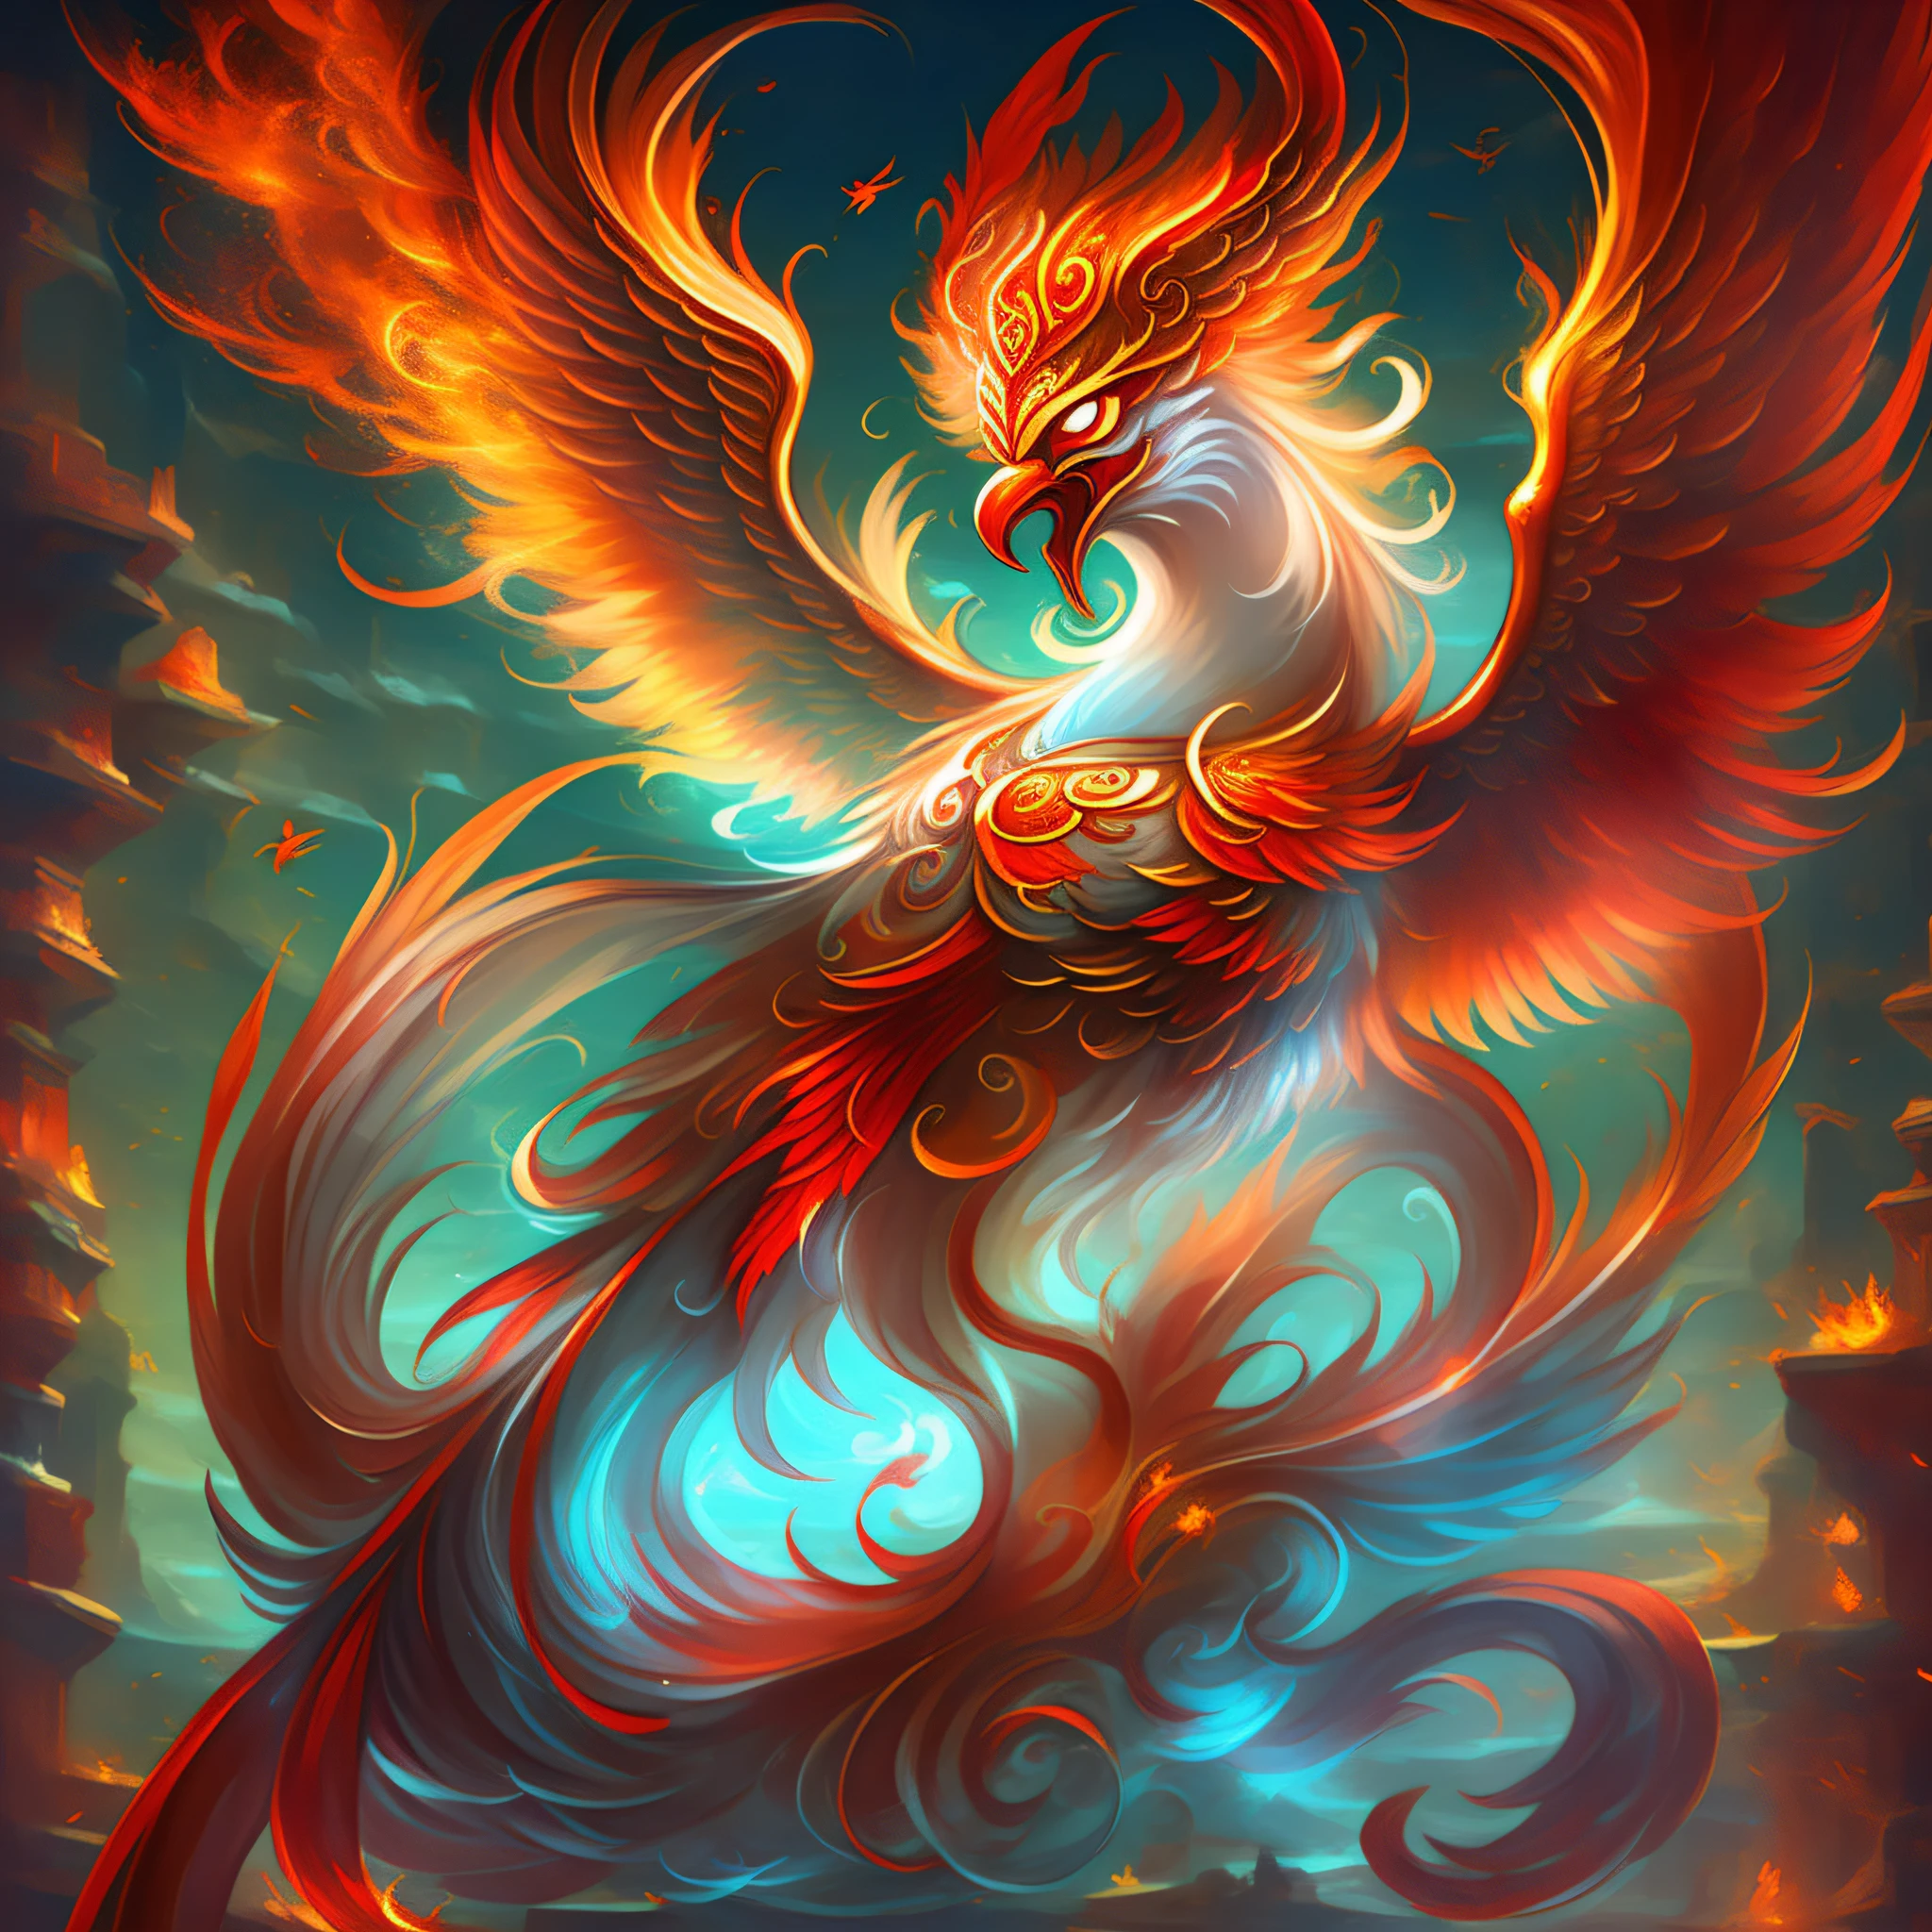 红凤凰, 吉祥平安的象征, 也是忠诚和贞洁的体现, 或勇敢与智慧的化身, 不断驱使红色的火焰, 画得很可爱